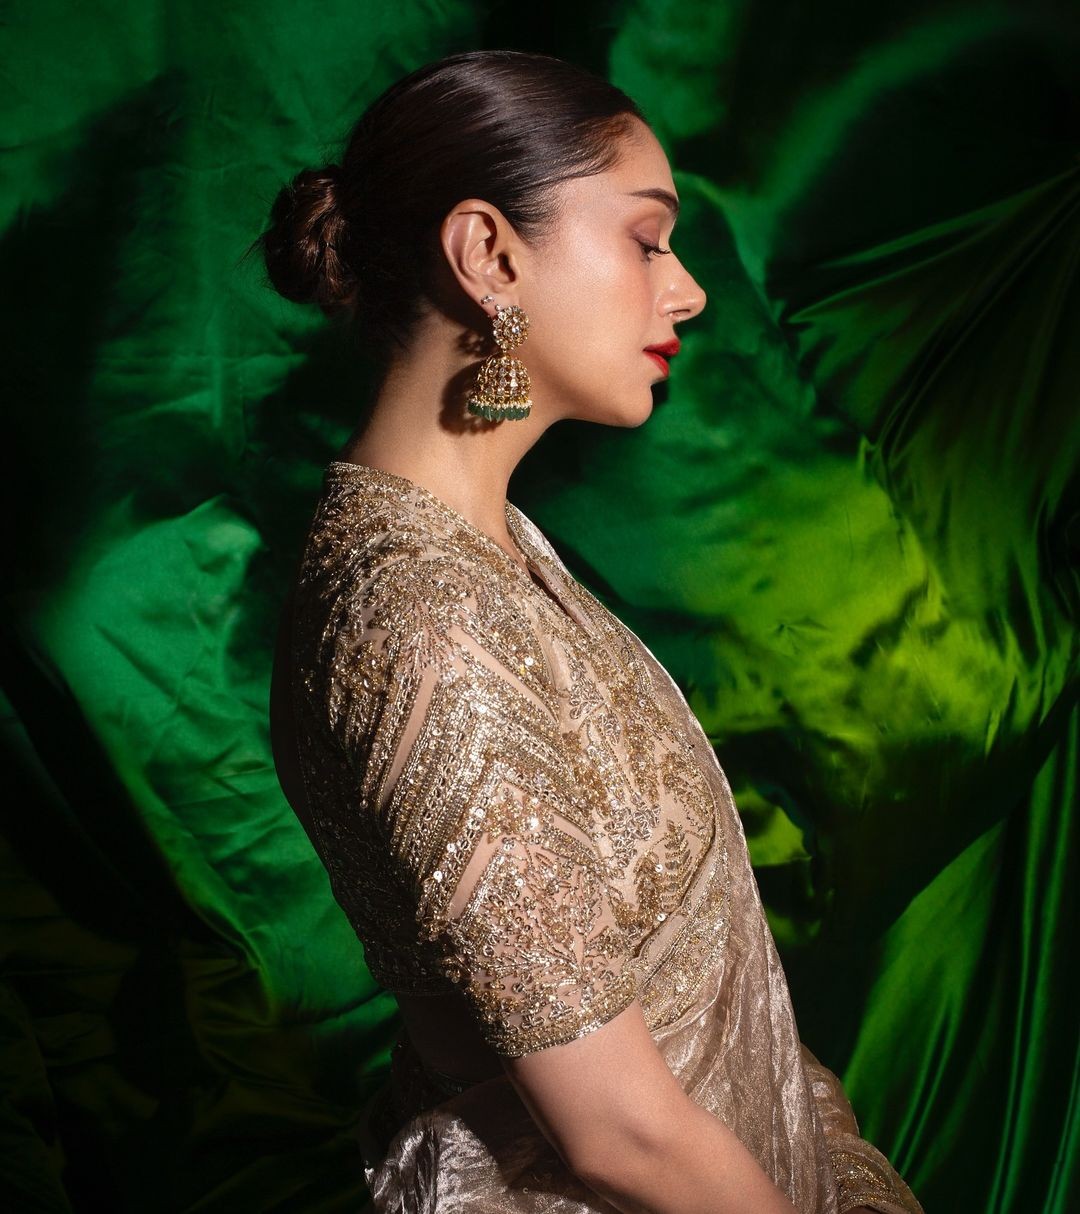 Aditi Rao Hydari Ravishing Looks in Shiny Dress